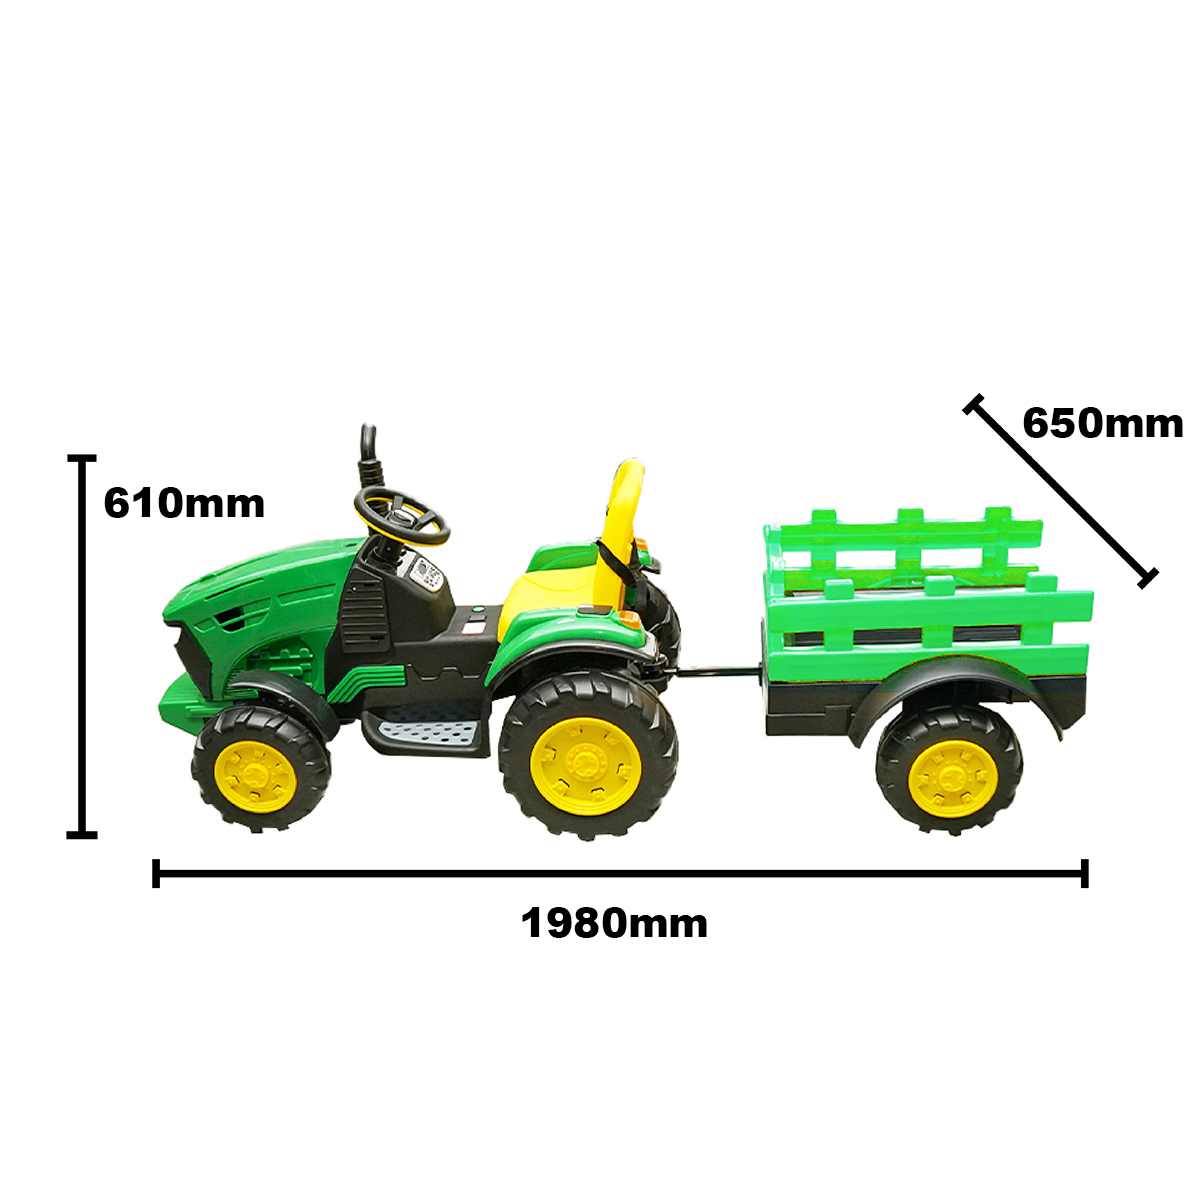 Tractor electric cu remorca pentru copii jucarie 1980x650x610